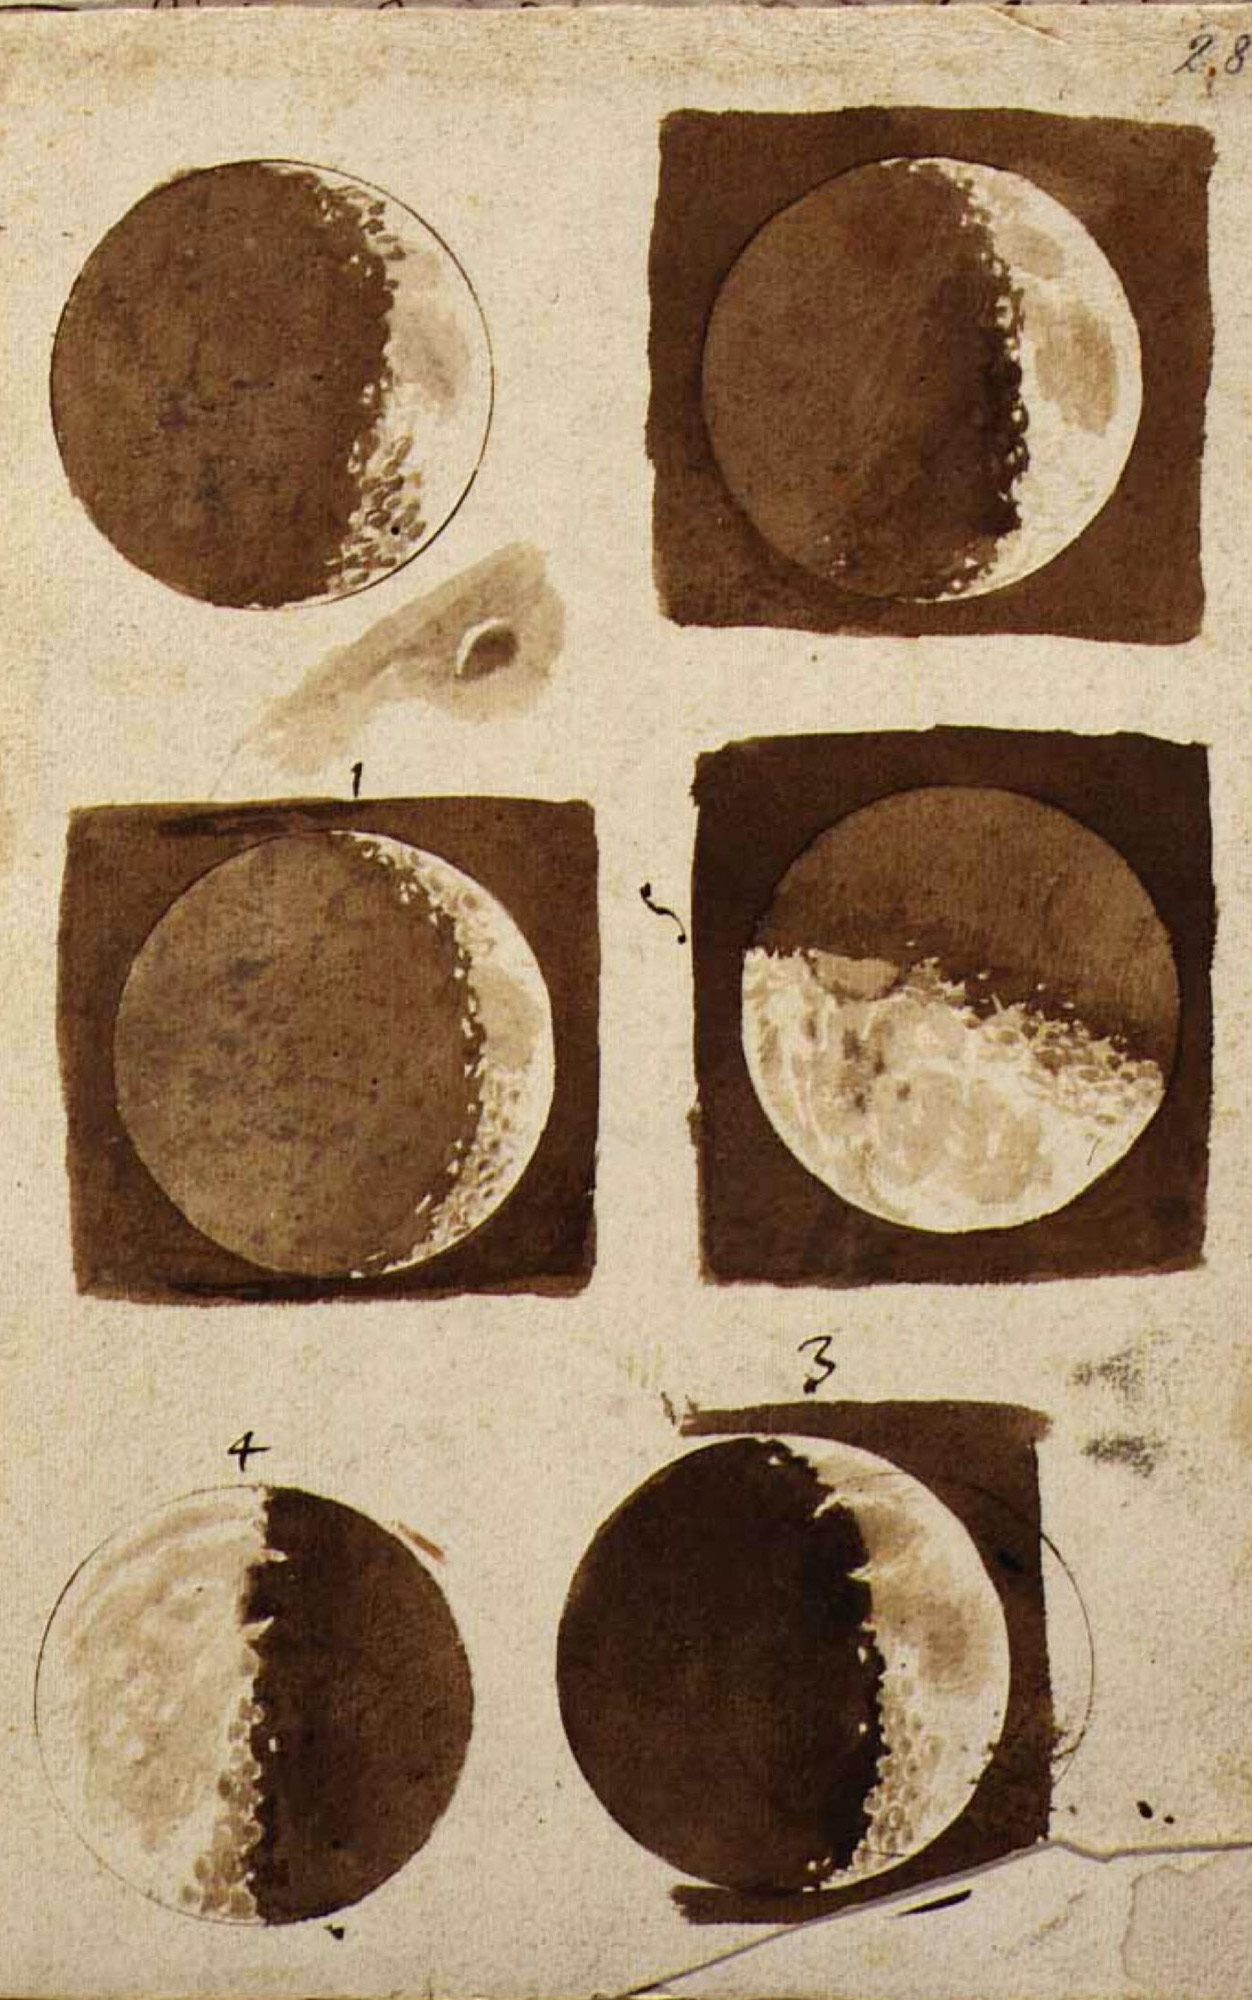 月のスケッチ by Galileo Galilei - 1609年 